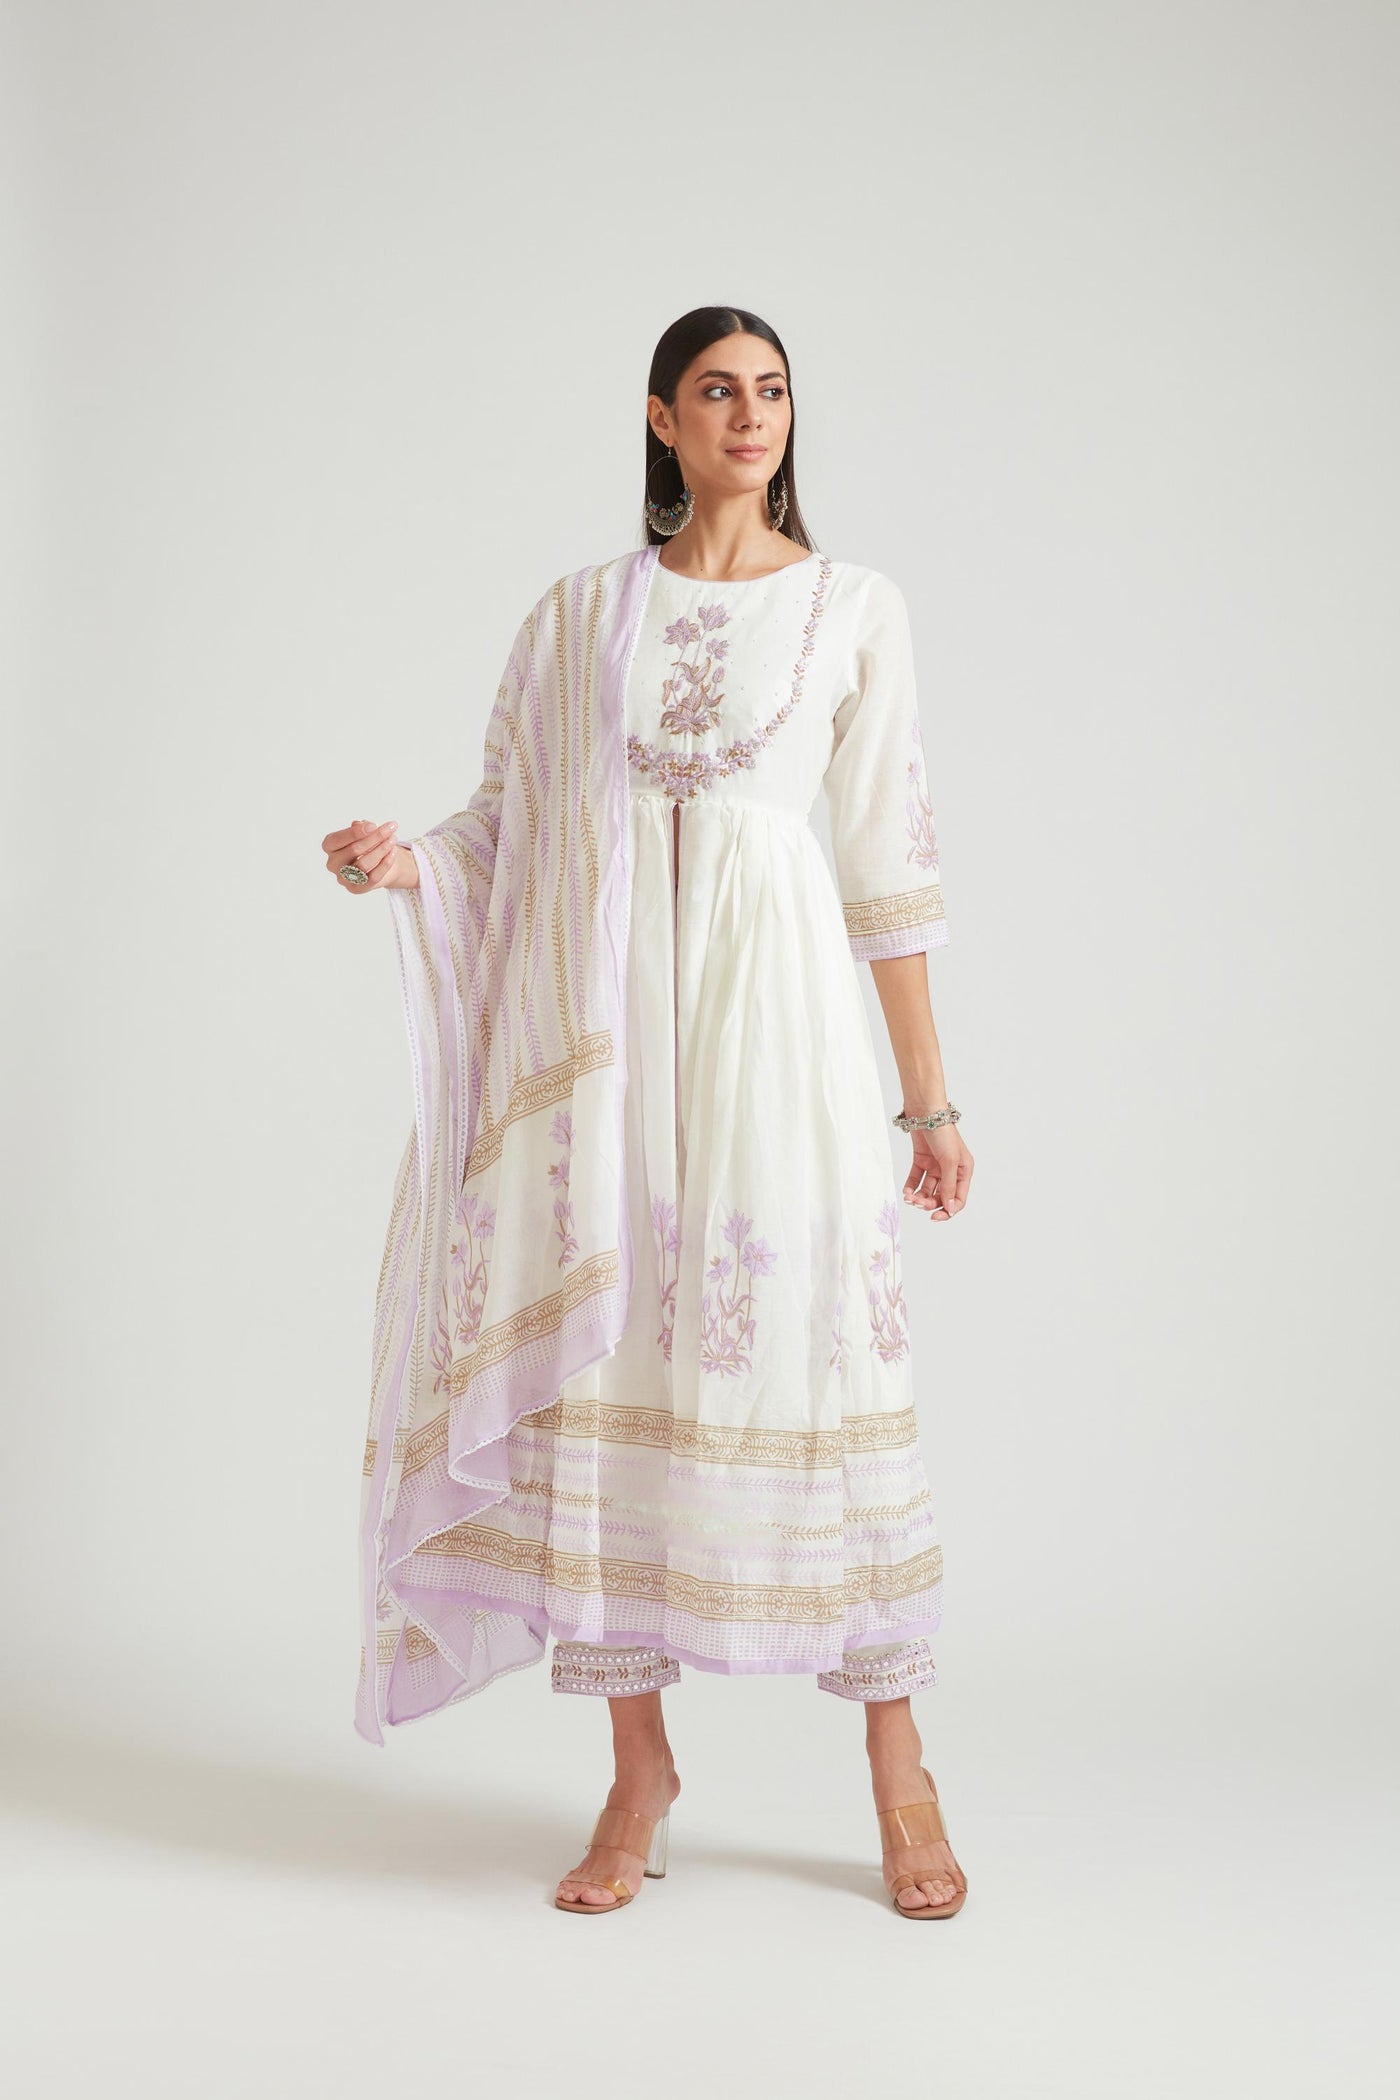 Neeru's Lavender Color Chanderi Fabric Salwar Kameez